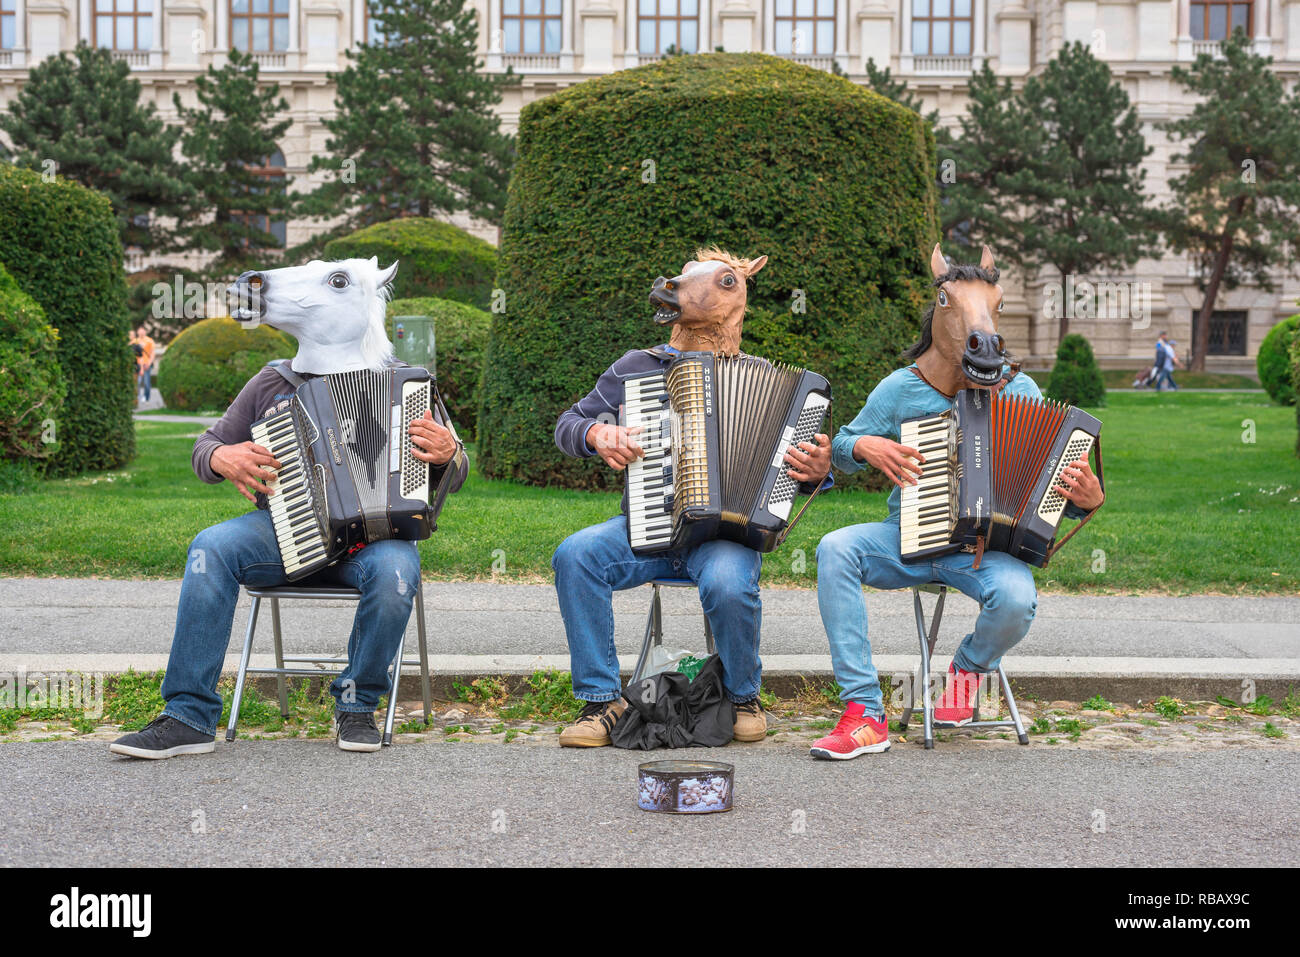 Buskers Straßentheater, ein Trio von akkordeonisten tragen bizarre Kopfbedeckungen spielen für Passanten in Maria Theresienplatz, Wien, Wien, Österreich. Stockfoto